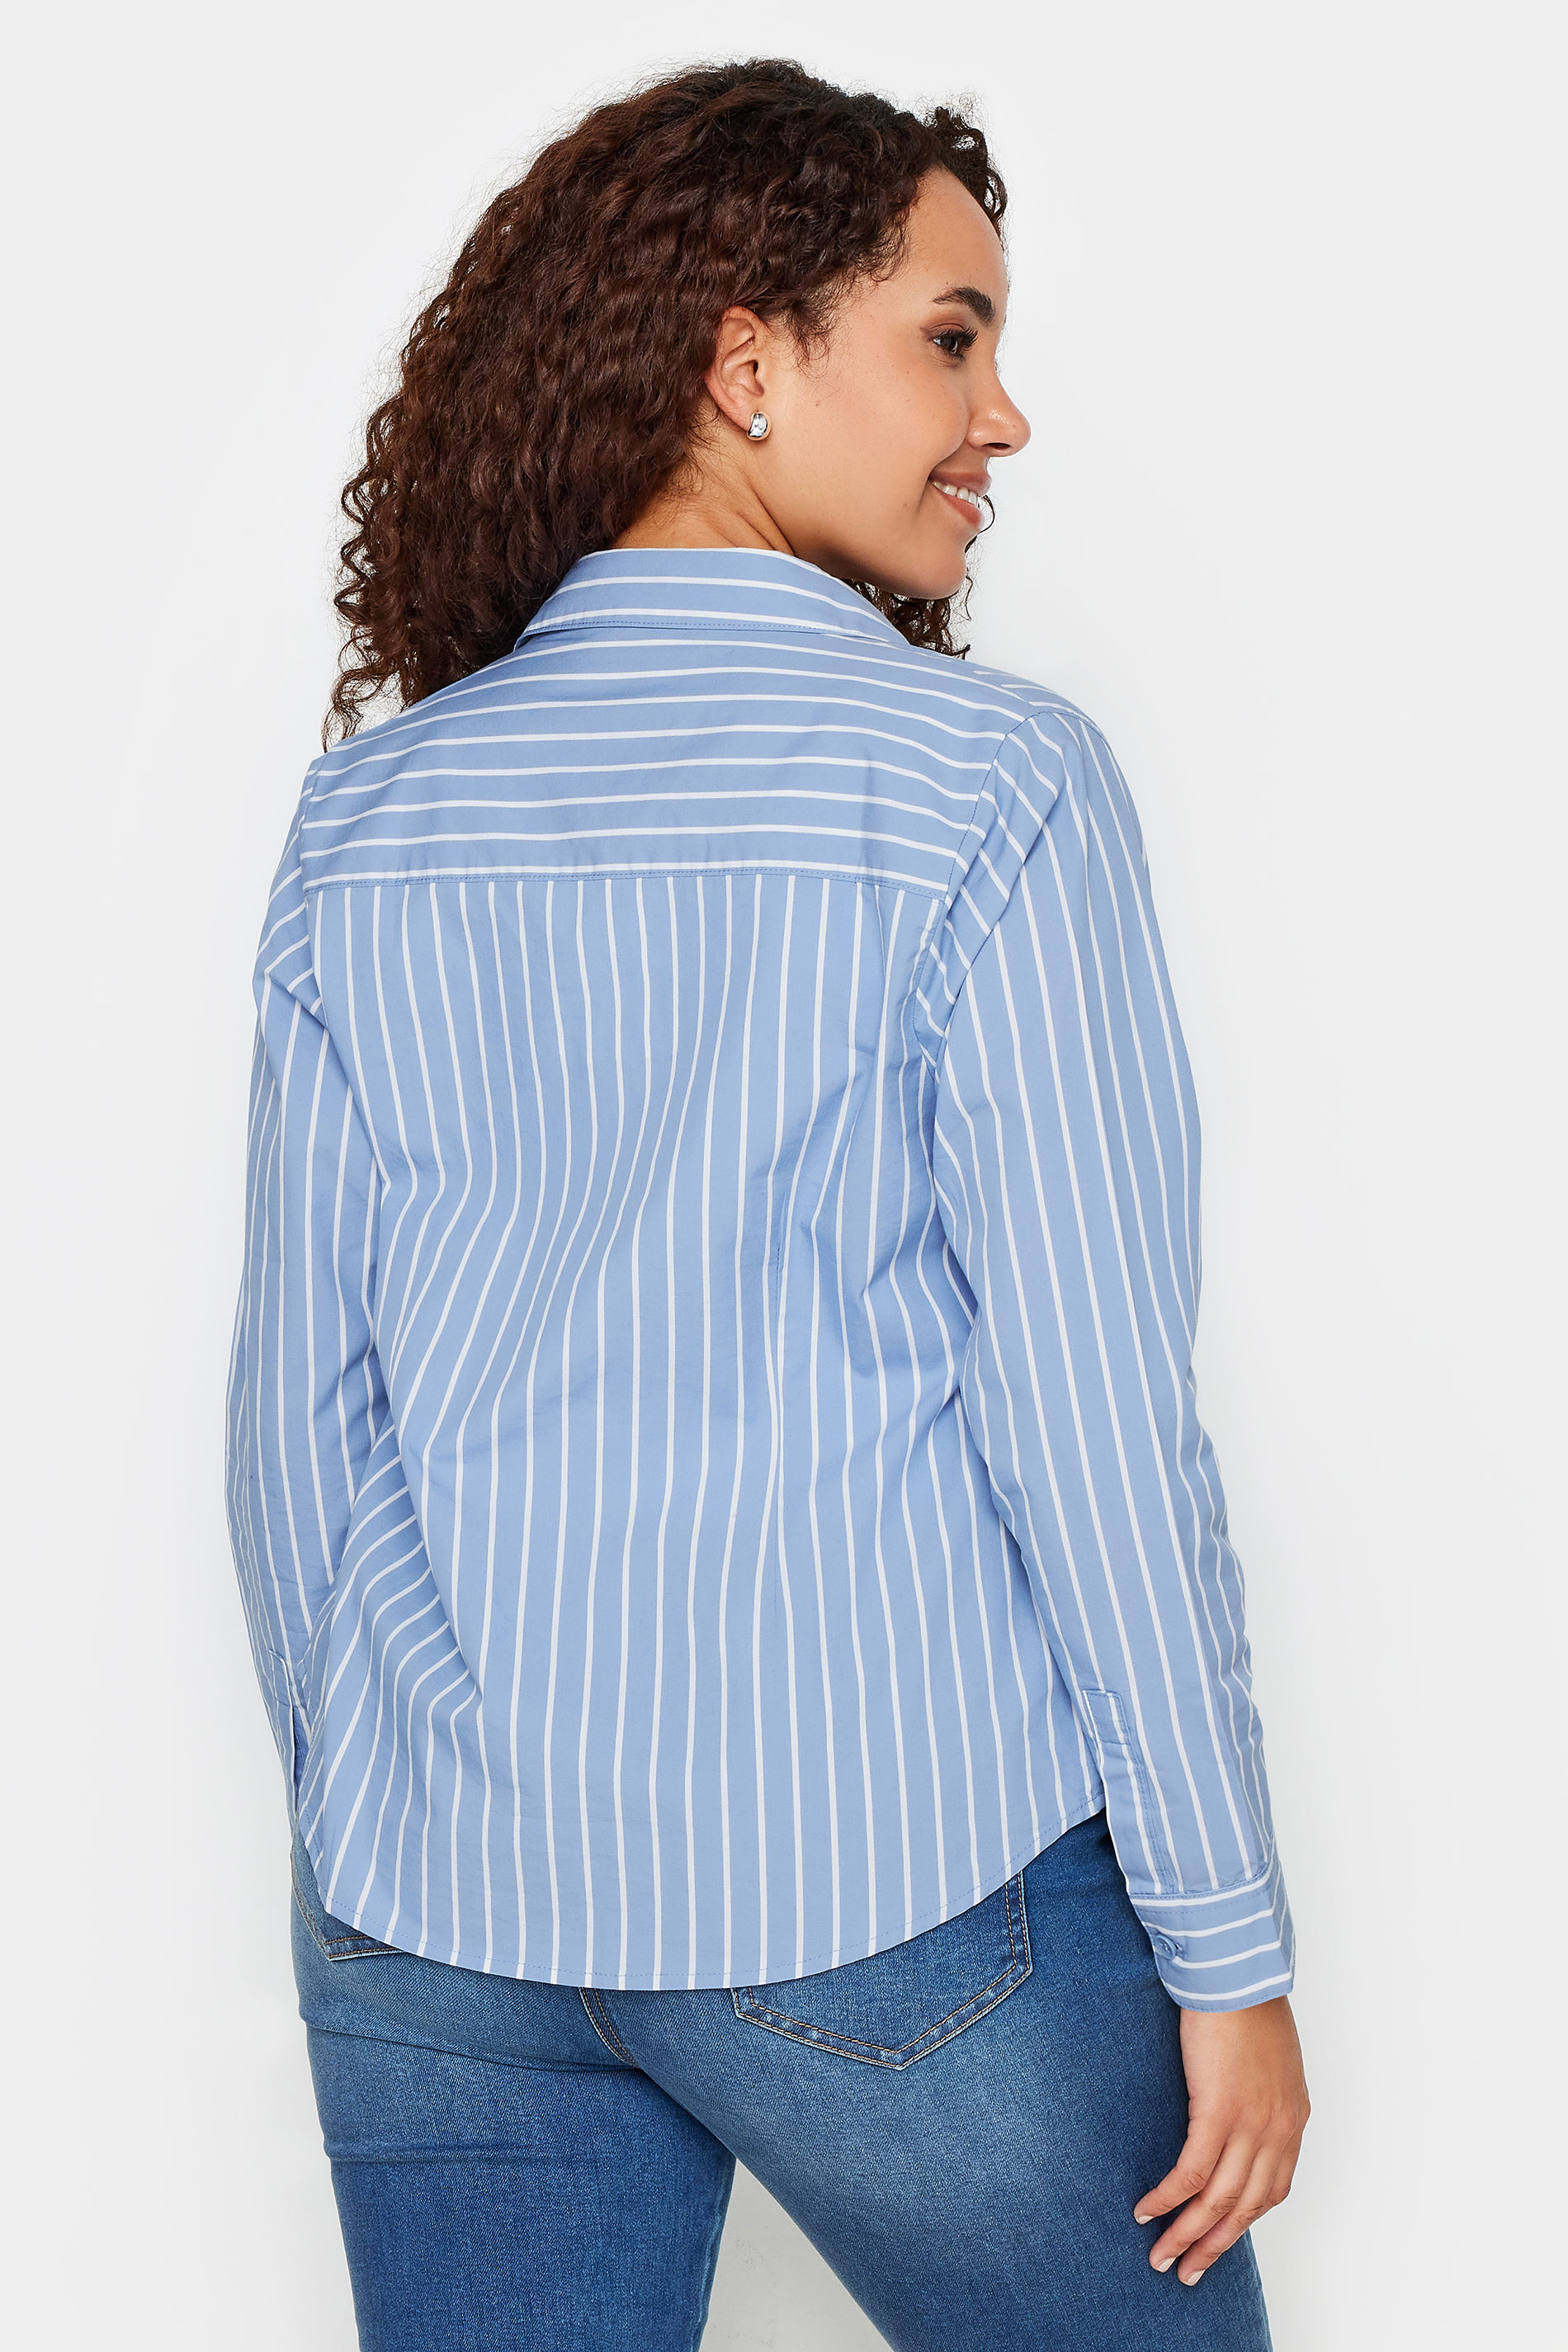 M&Co Blue & White Striped Cotton Poplin Shirt | M&Co 3